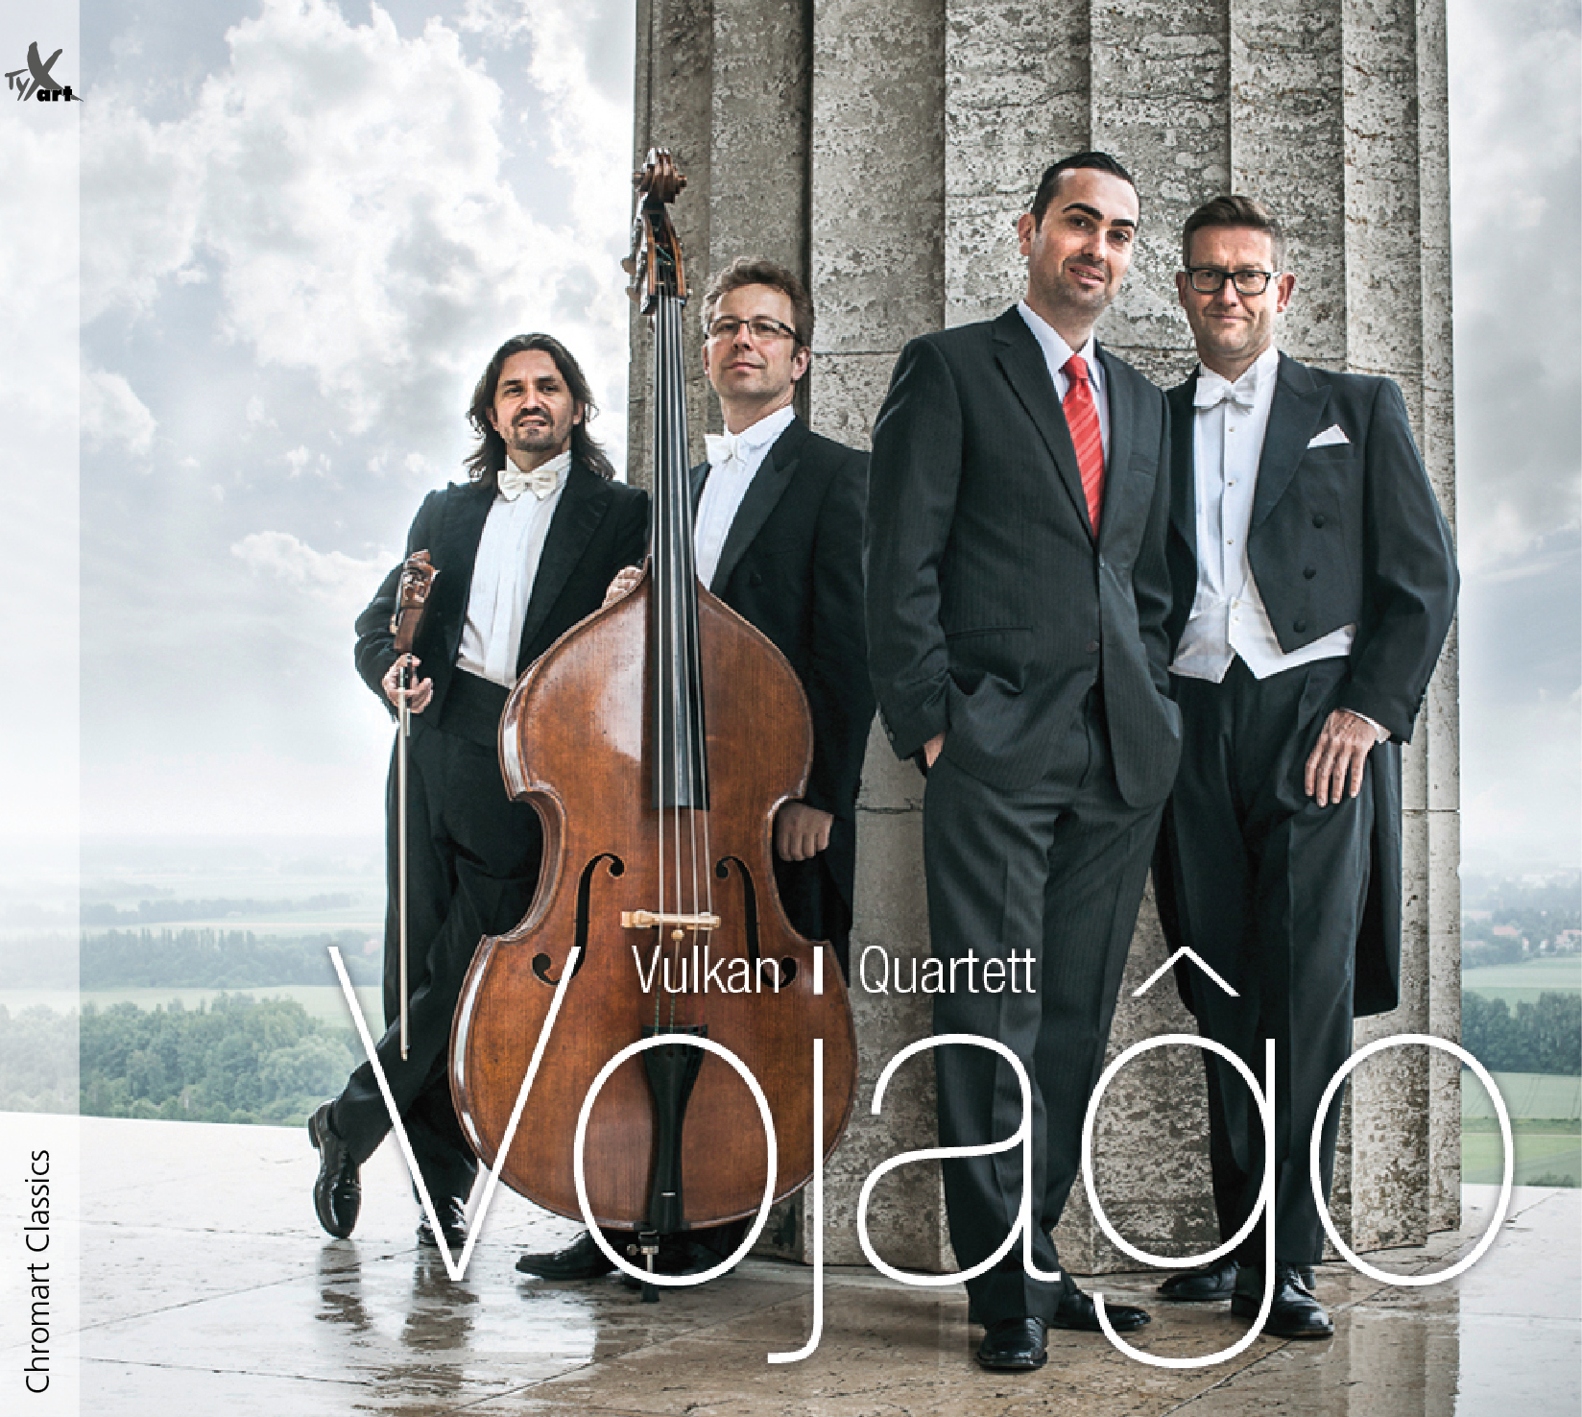 Vojago - Vulkan Quartett